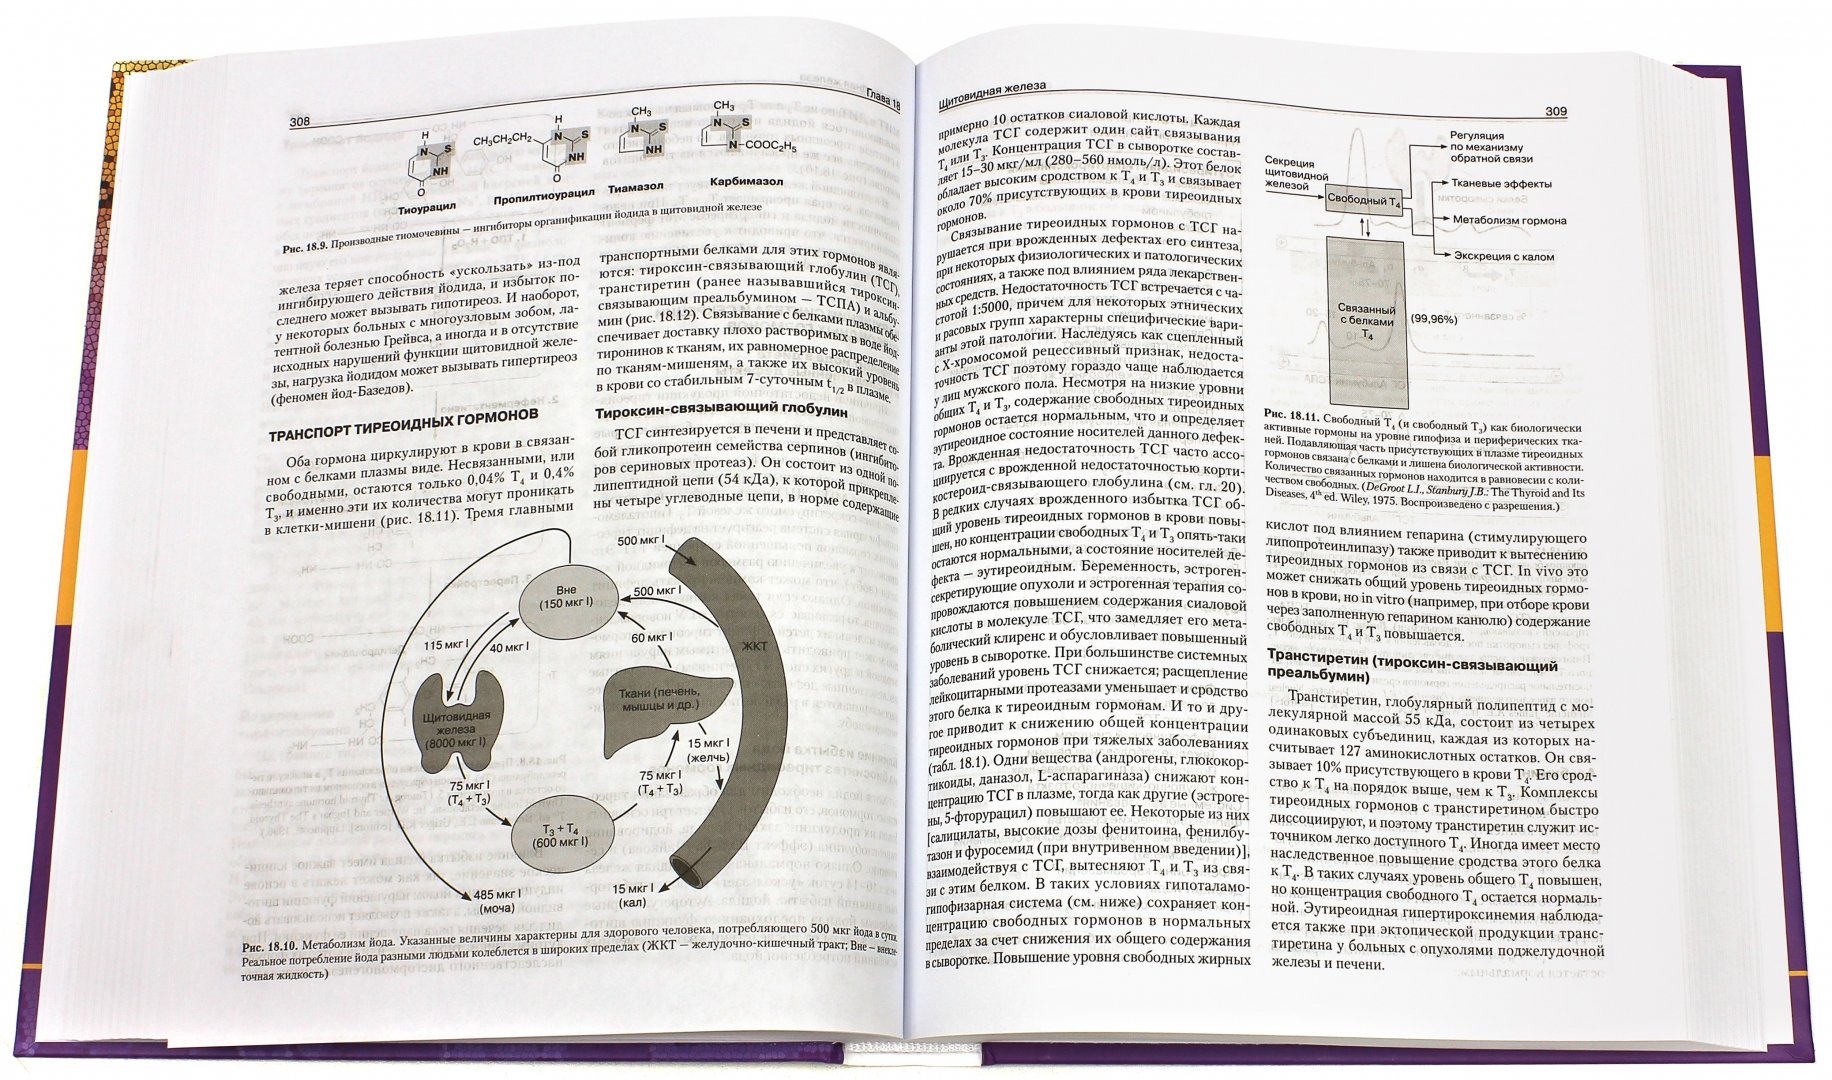 Иллюстрация 1 из 51 для Базисная и клиническая эндокринология. Книга 2 - Гарднер, Шобек | Лабиринт - книги. Источник: Лабиринт